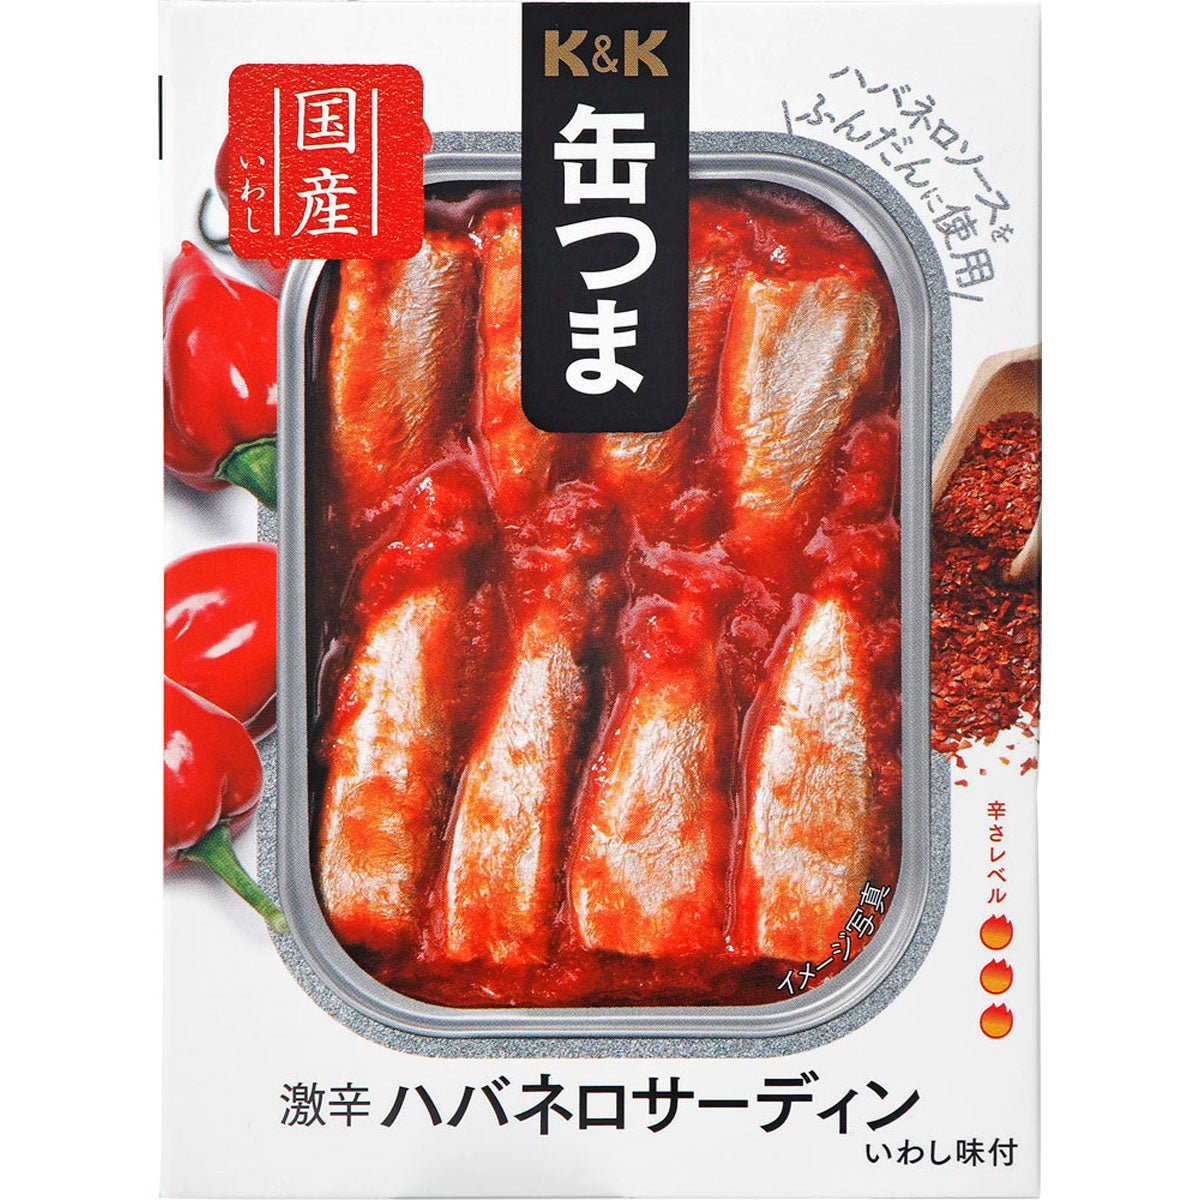 K&K peut tsuma une sardine épicée chaude épicée